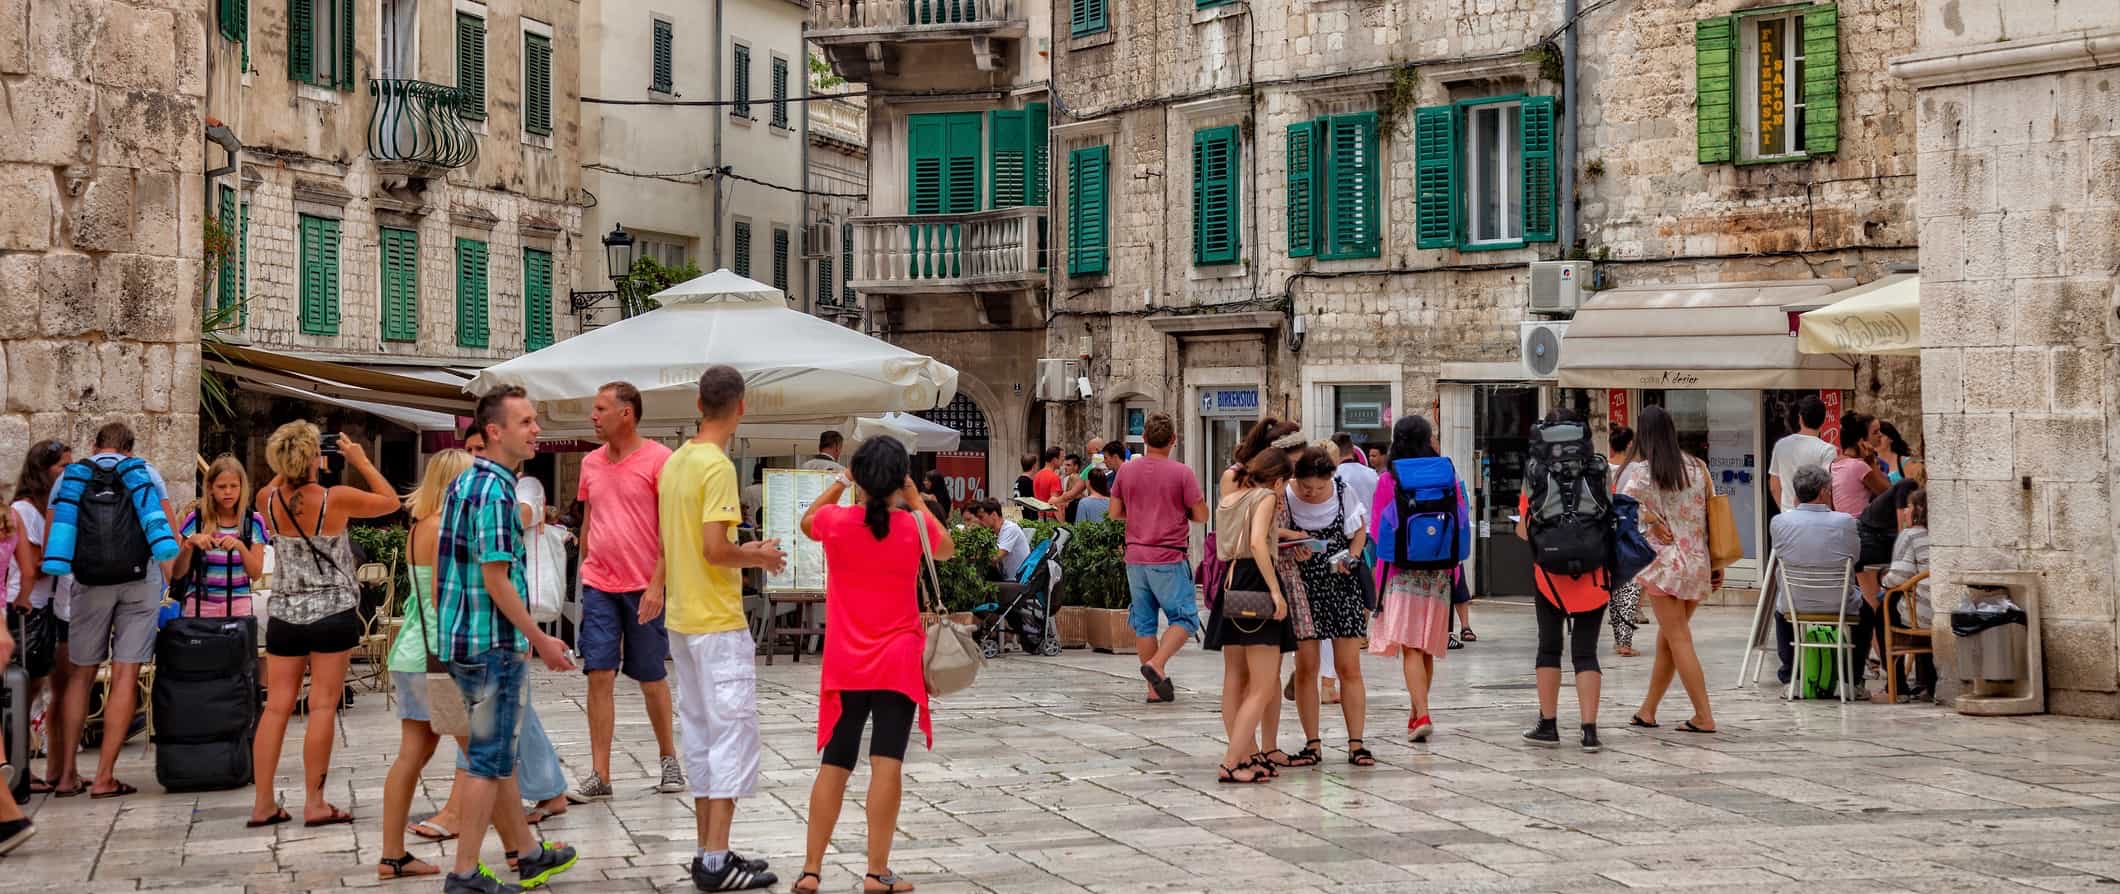 People walking down a narrow old street in Split, Croatia